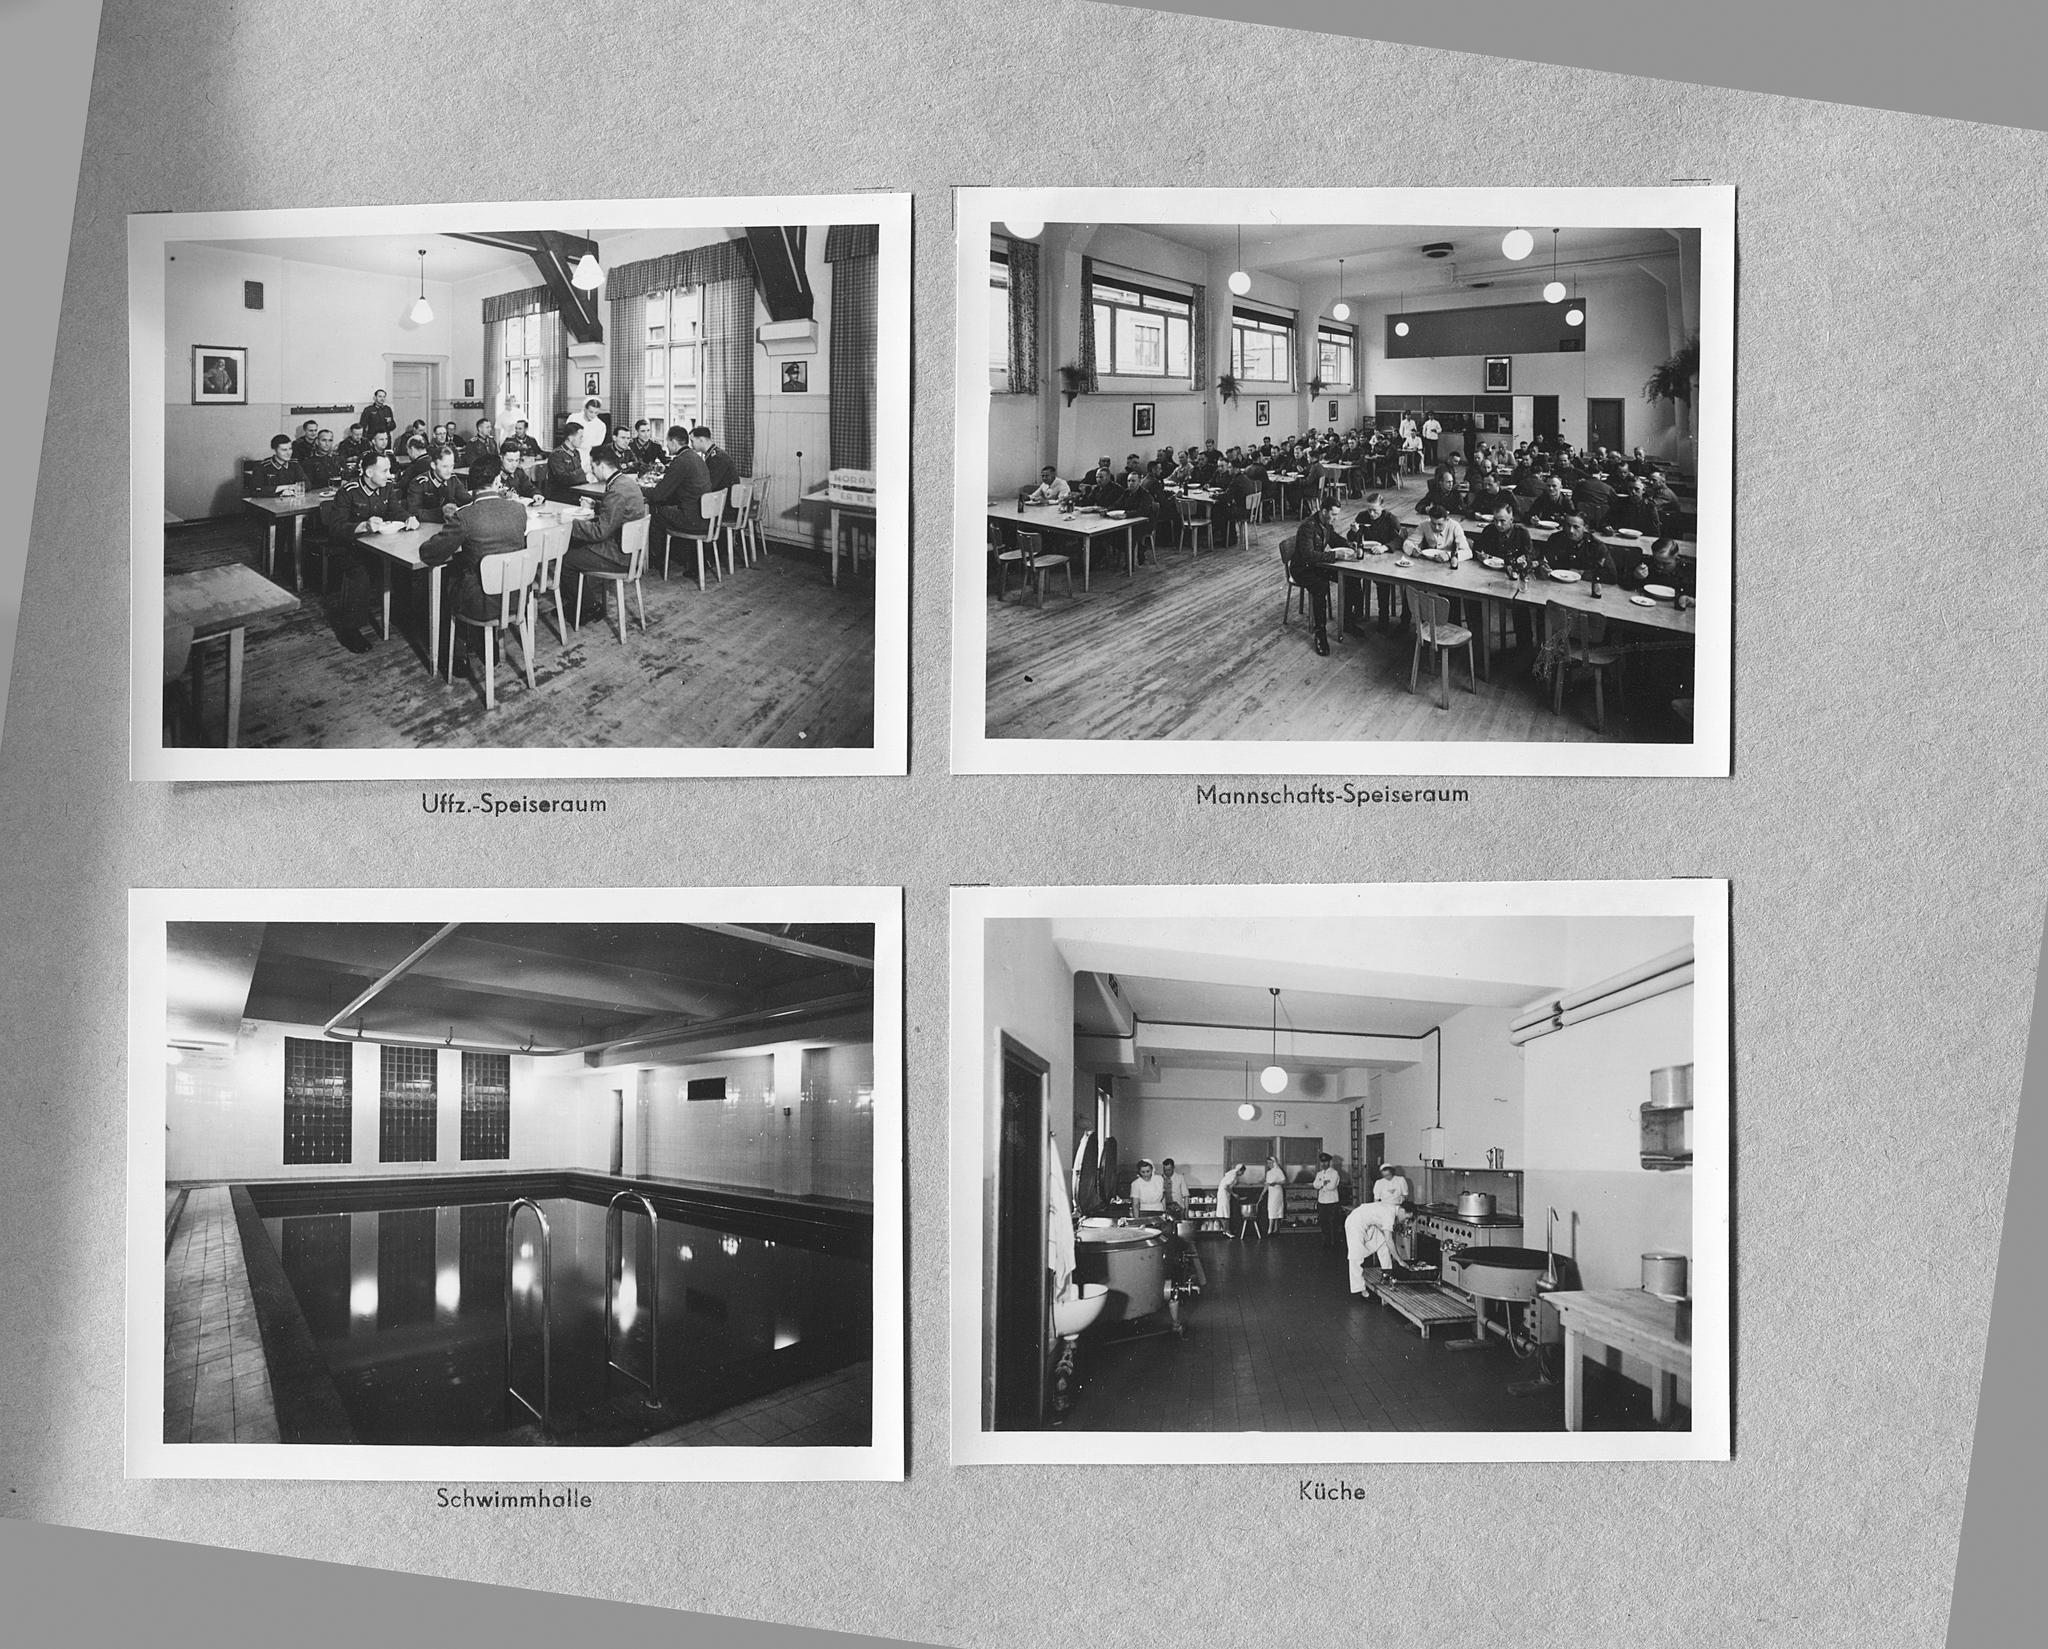  Ruseløkka skole fikk storkjøkken, spisesal og en stor svømmehall, populær blant tyske SS-offiserer. De fire bildene er fra et fotoalbum det tyske befalet ga i julegave til soldatene i Oslo julen 1942.